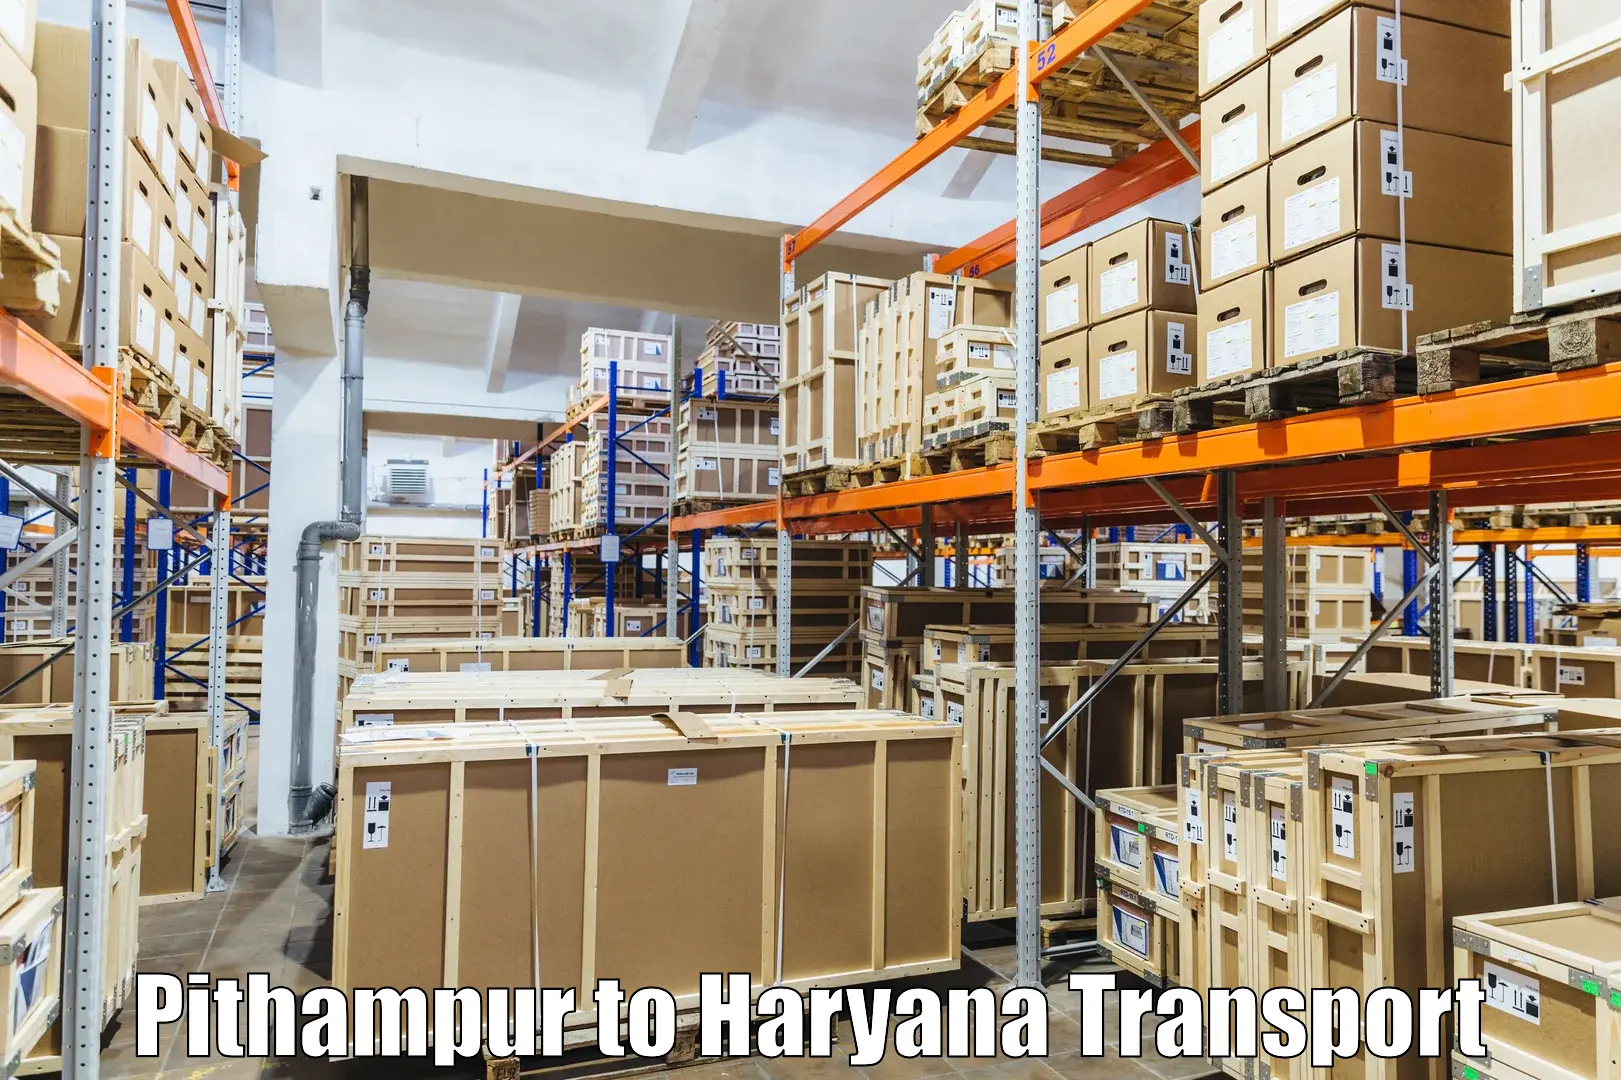 Shipping partner Pithampur to Rewari